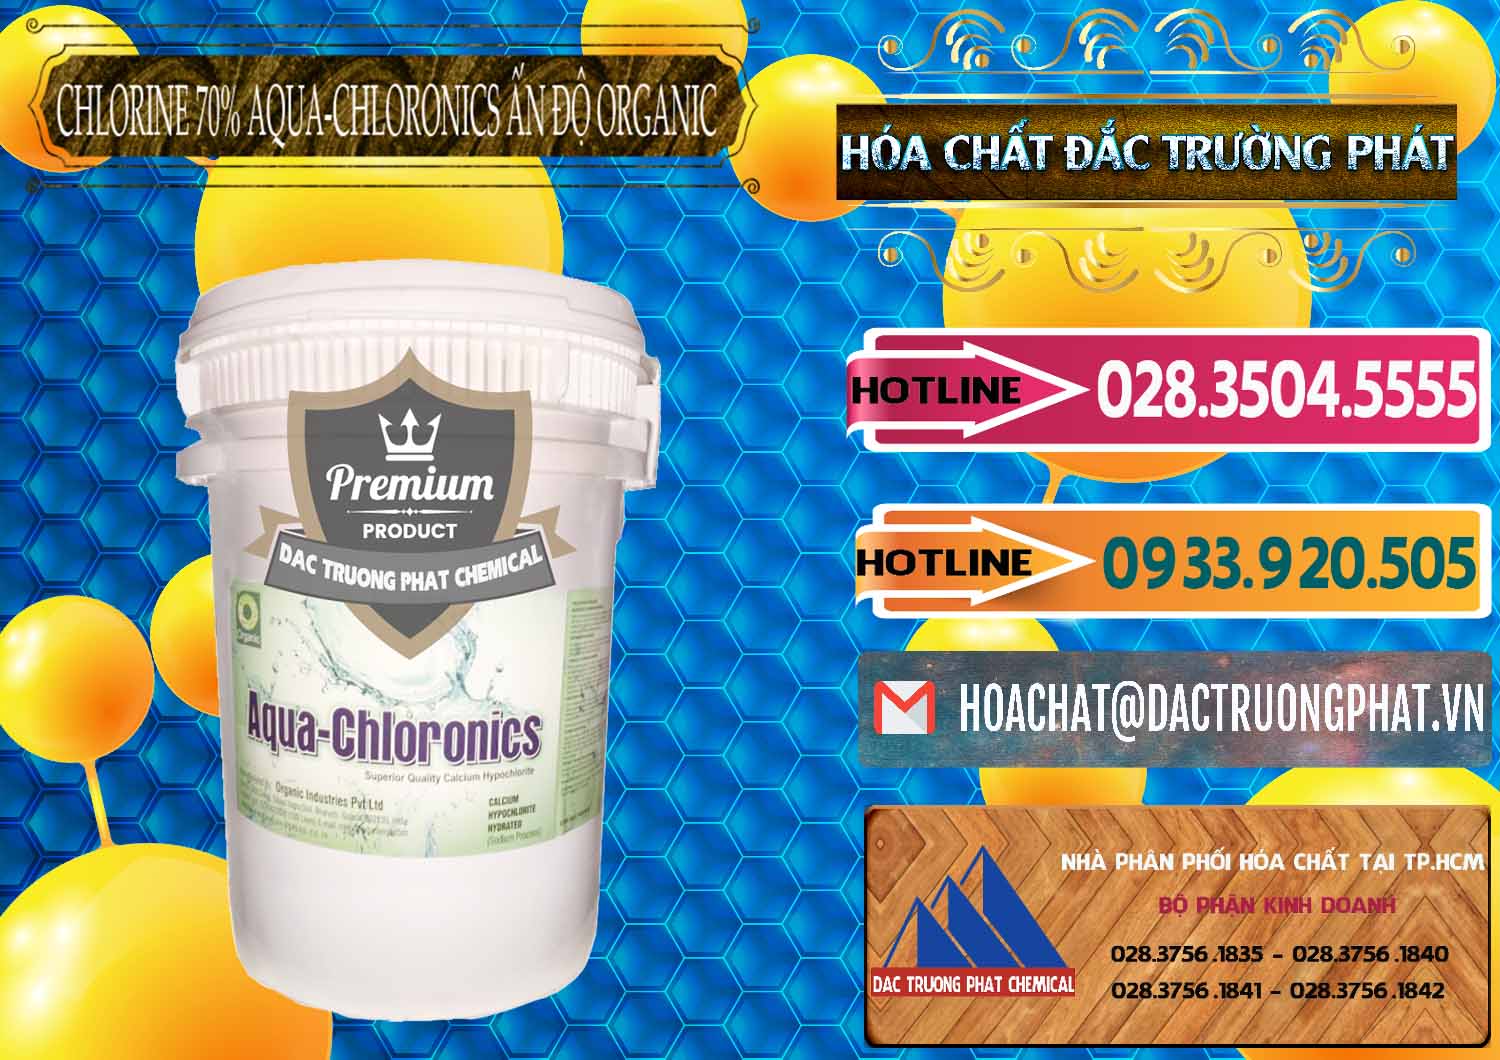 Cty chuyên kinh doanh và bán Chlorine – Clorin 70% Aqua-Chloronics Ấn Độ Organic India - 0211 - Công ty chuyên cung cấp - bán hóa chất tại TP.HCM - dactruongphat.vn